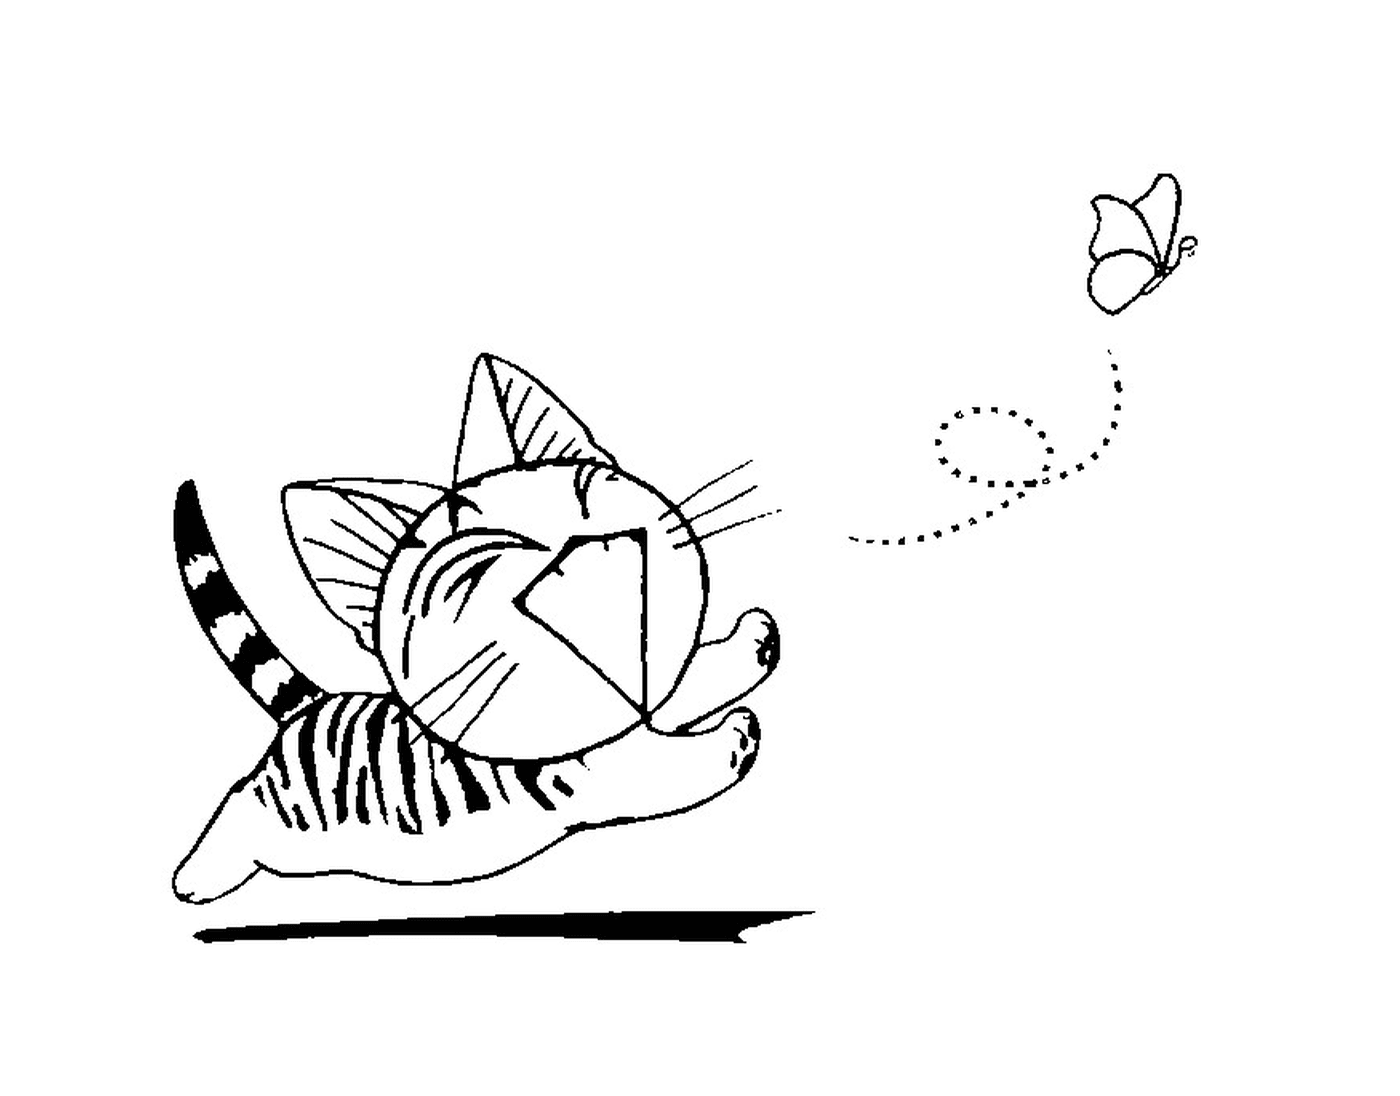  Eine chinesische Katze, die einem Schmetterling hinterherläuft 